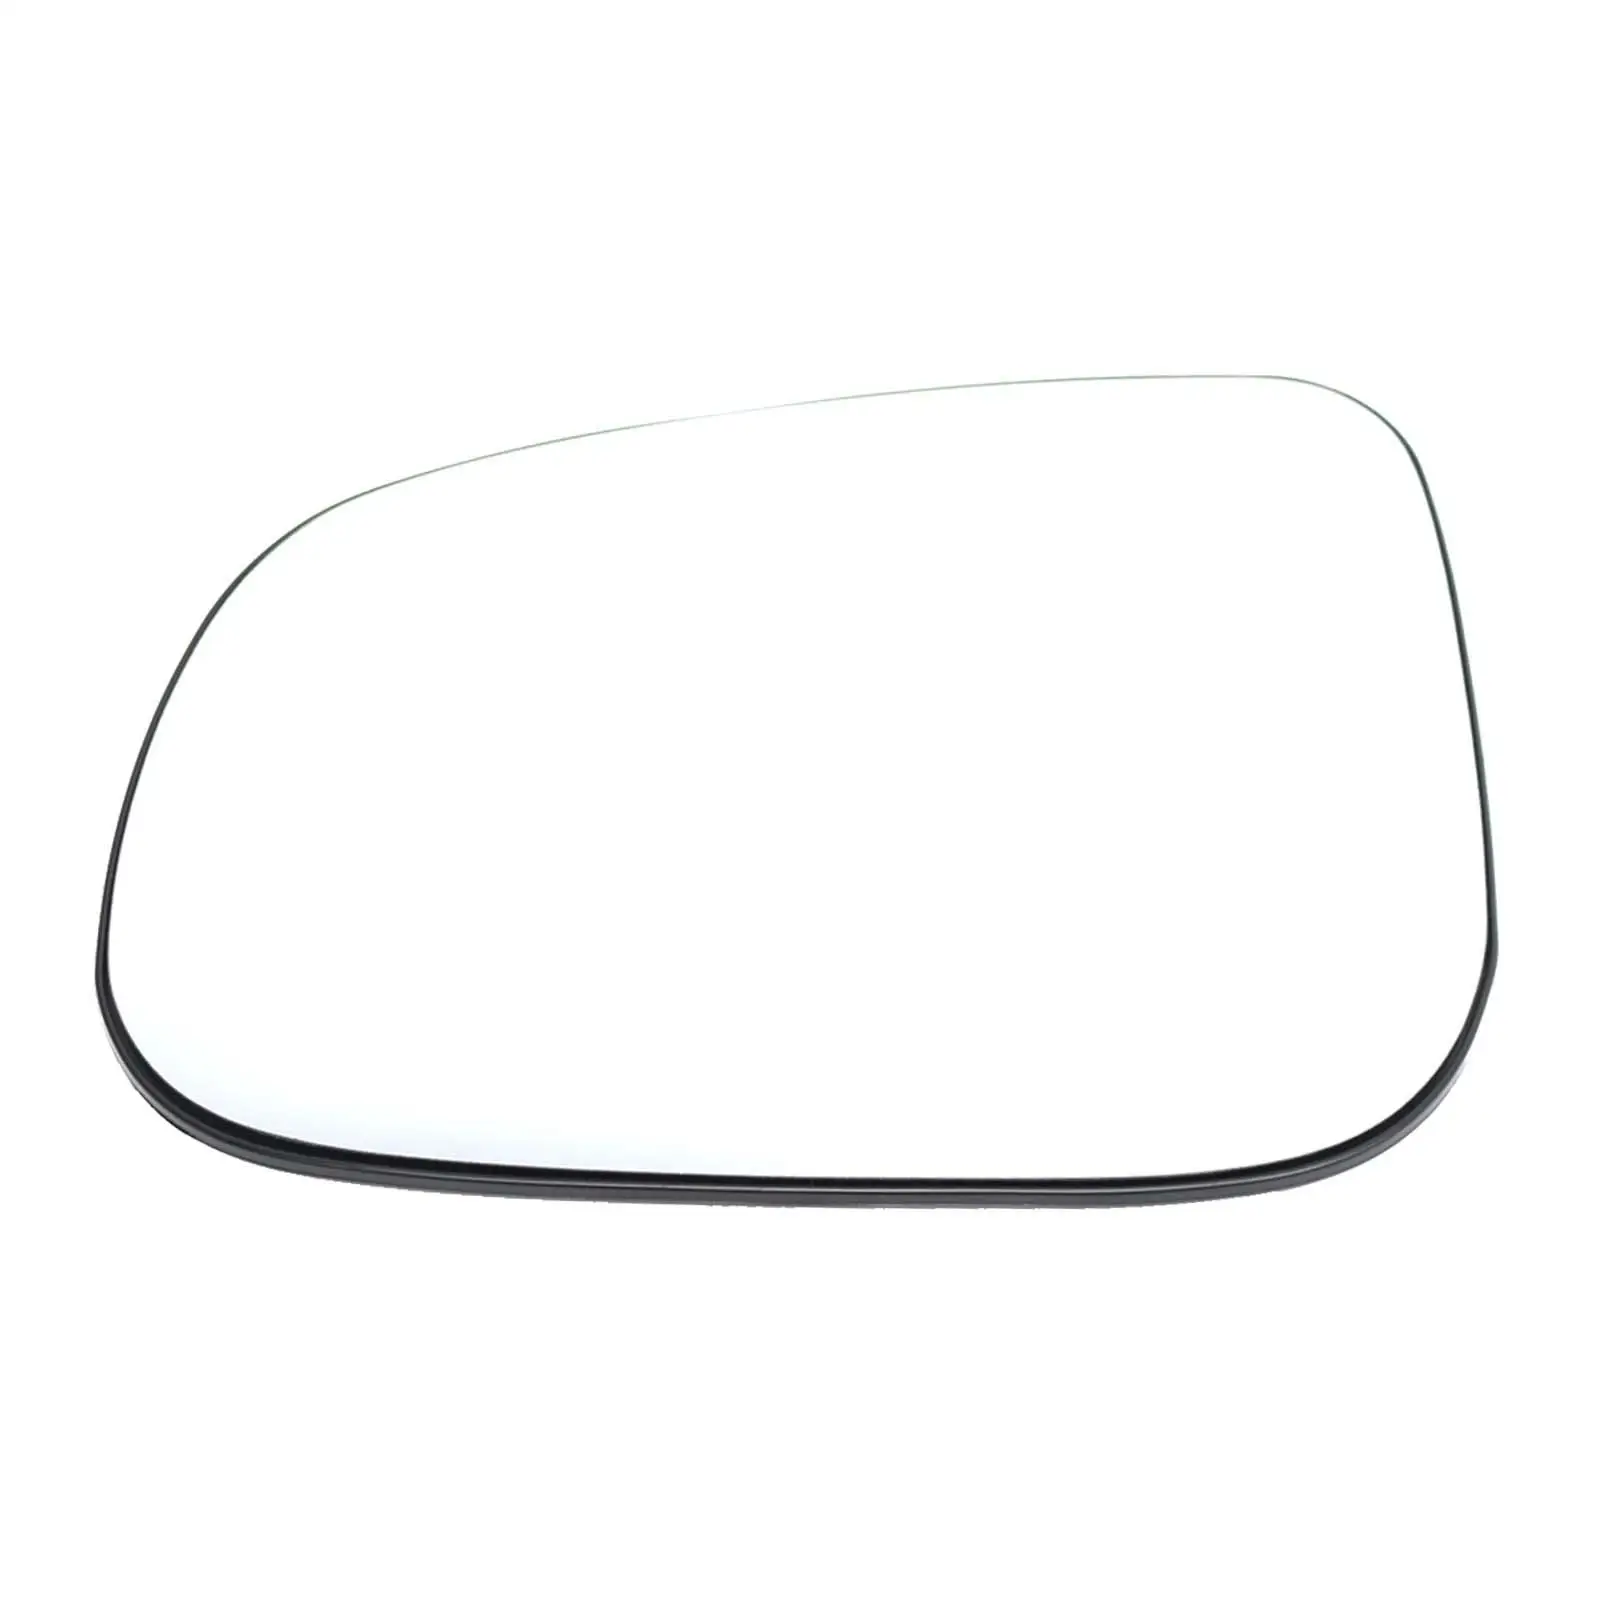 Замена стекла бокового зеркала на маленькое боковое зеркальное стекло для S60 - 1